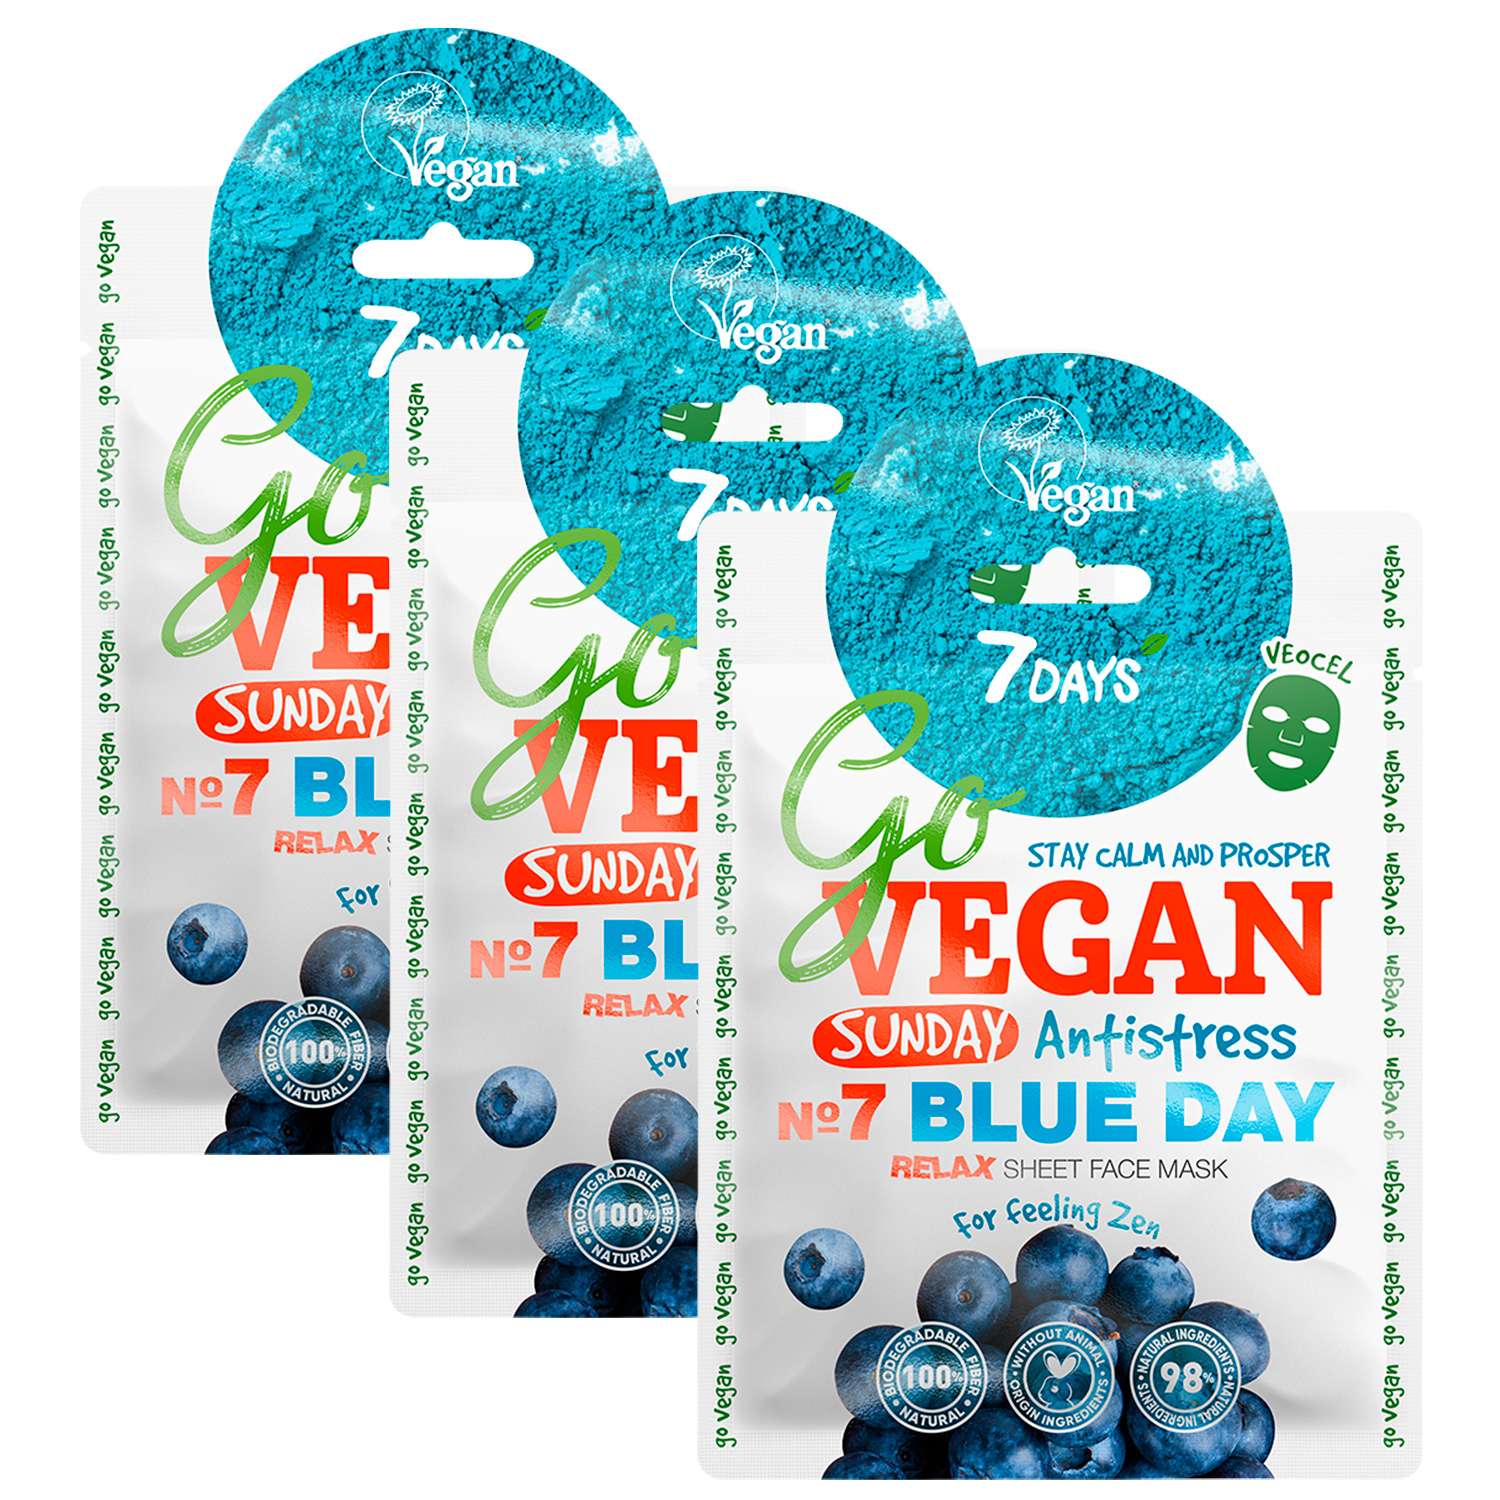 7 Days go Vegan маски. Маски 7 Days набор. Пн 7 Days go Vegan набор тканевых масок. Маска 7 Days воскресенье. Маски seven days